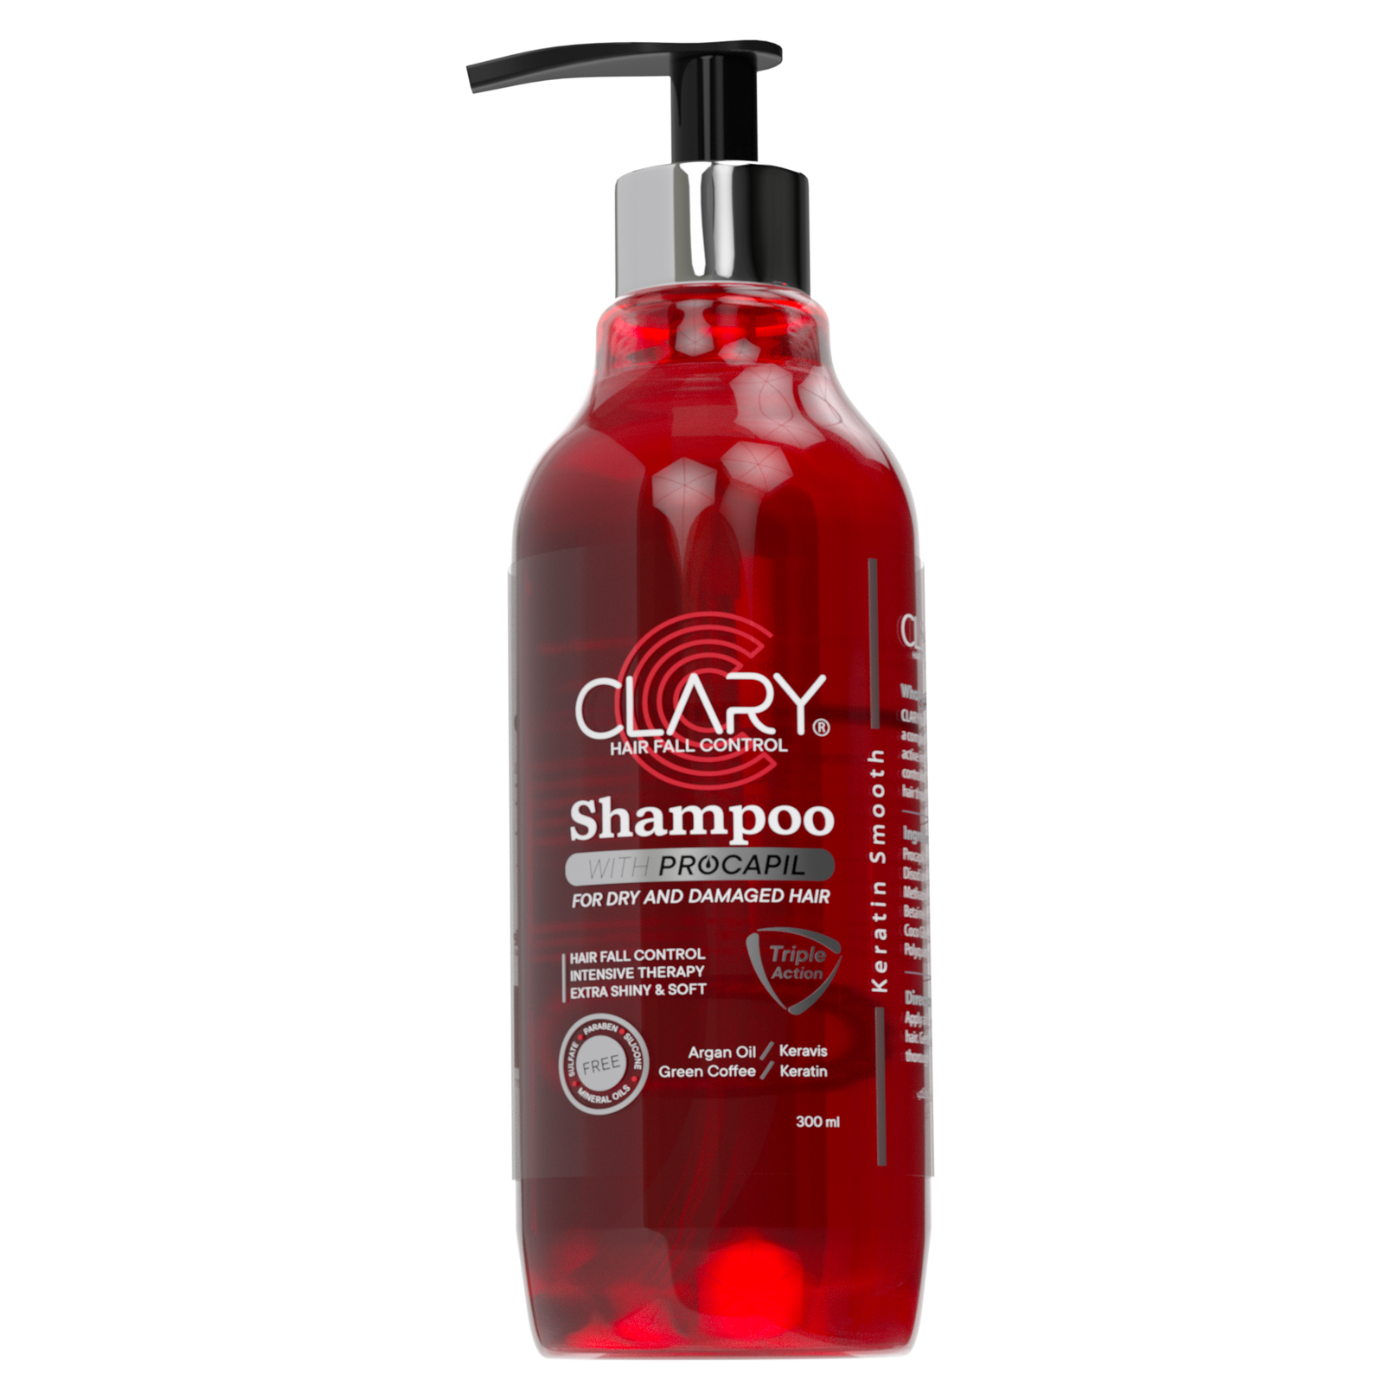 Clary Shampoo 300 ml